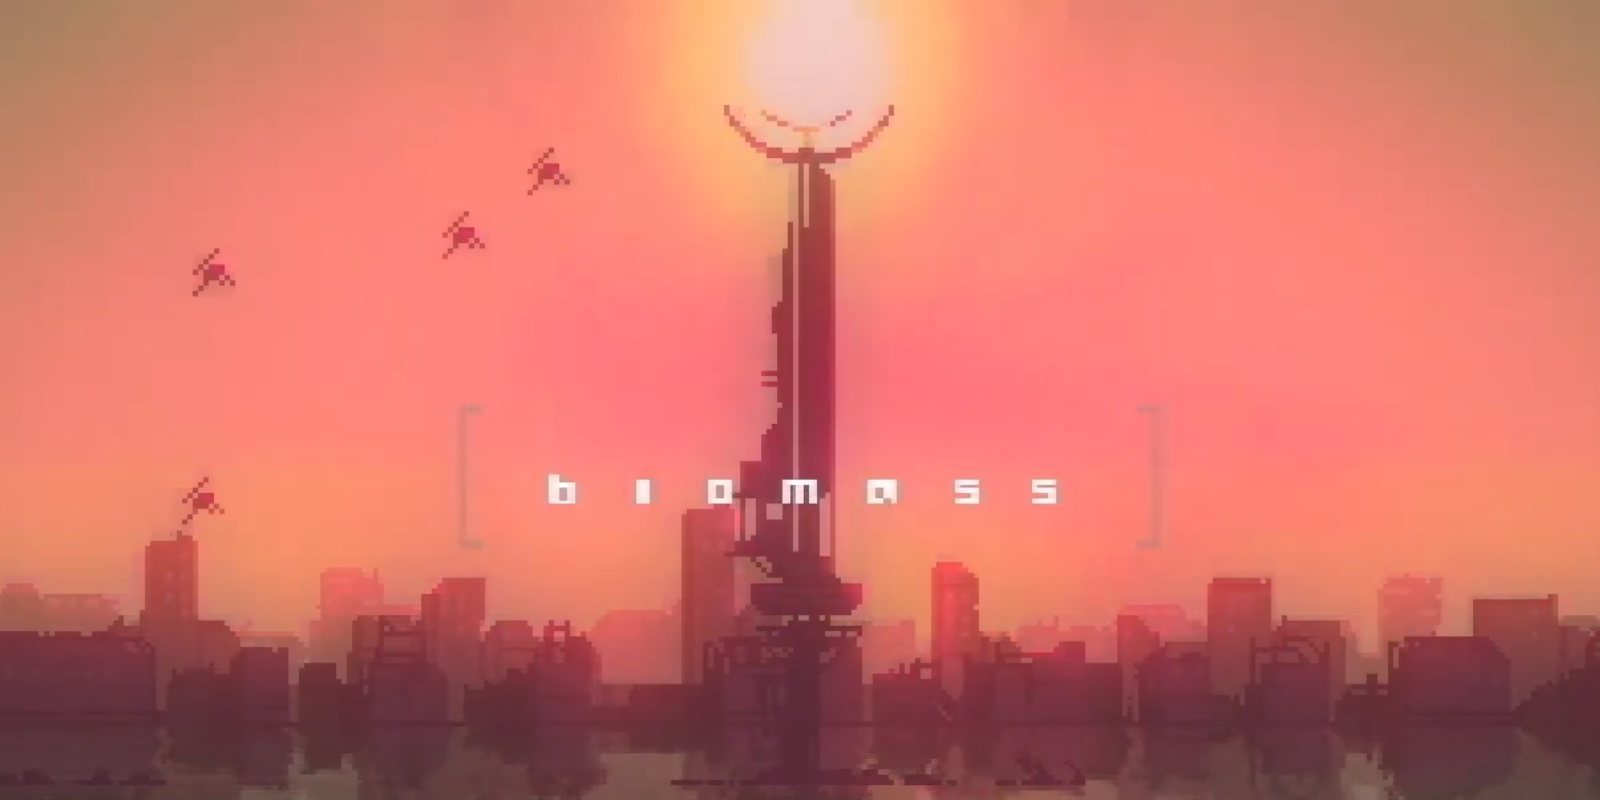 La demo de 'Biomass' es una fantástica manera de entretenerte gratis descubriendo este 'souls cyberpunk'